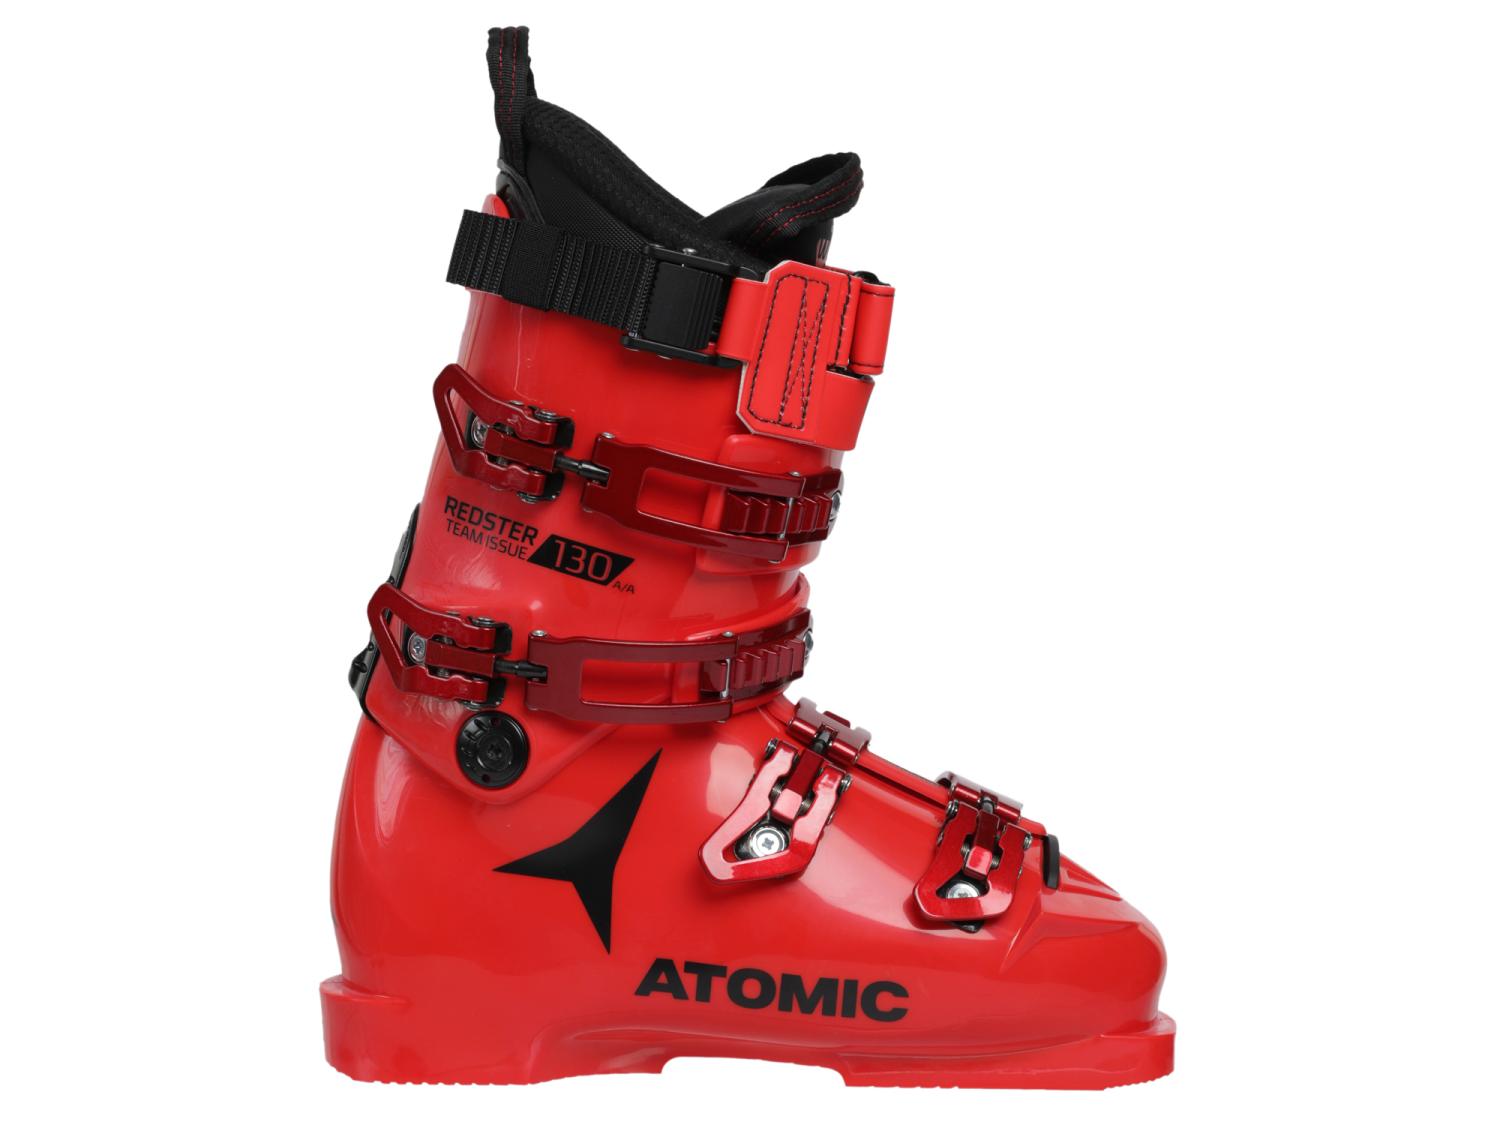 Ботинки горнолыжные Atomic 20-21 Redster Team Issue 130 Red/Black как отказаться от пластика руководство по спасению мира